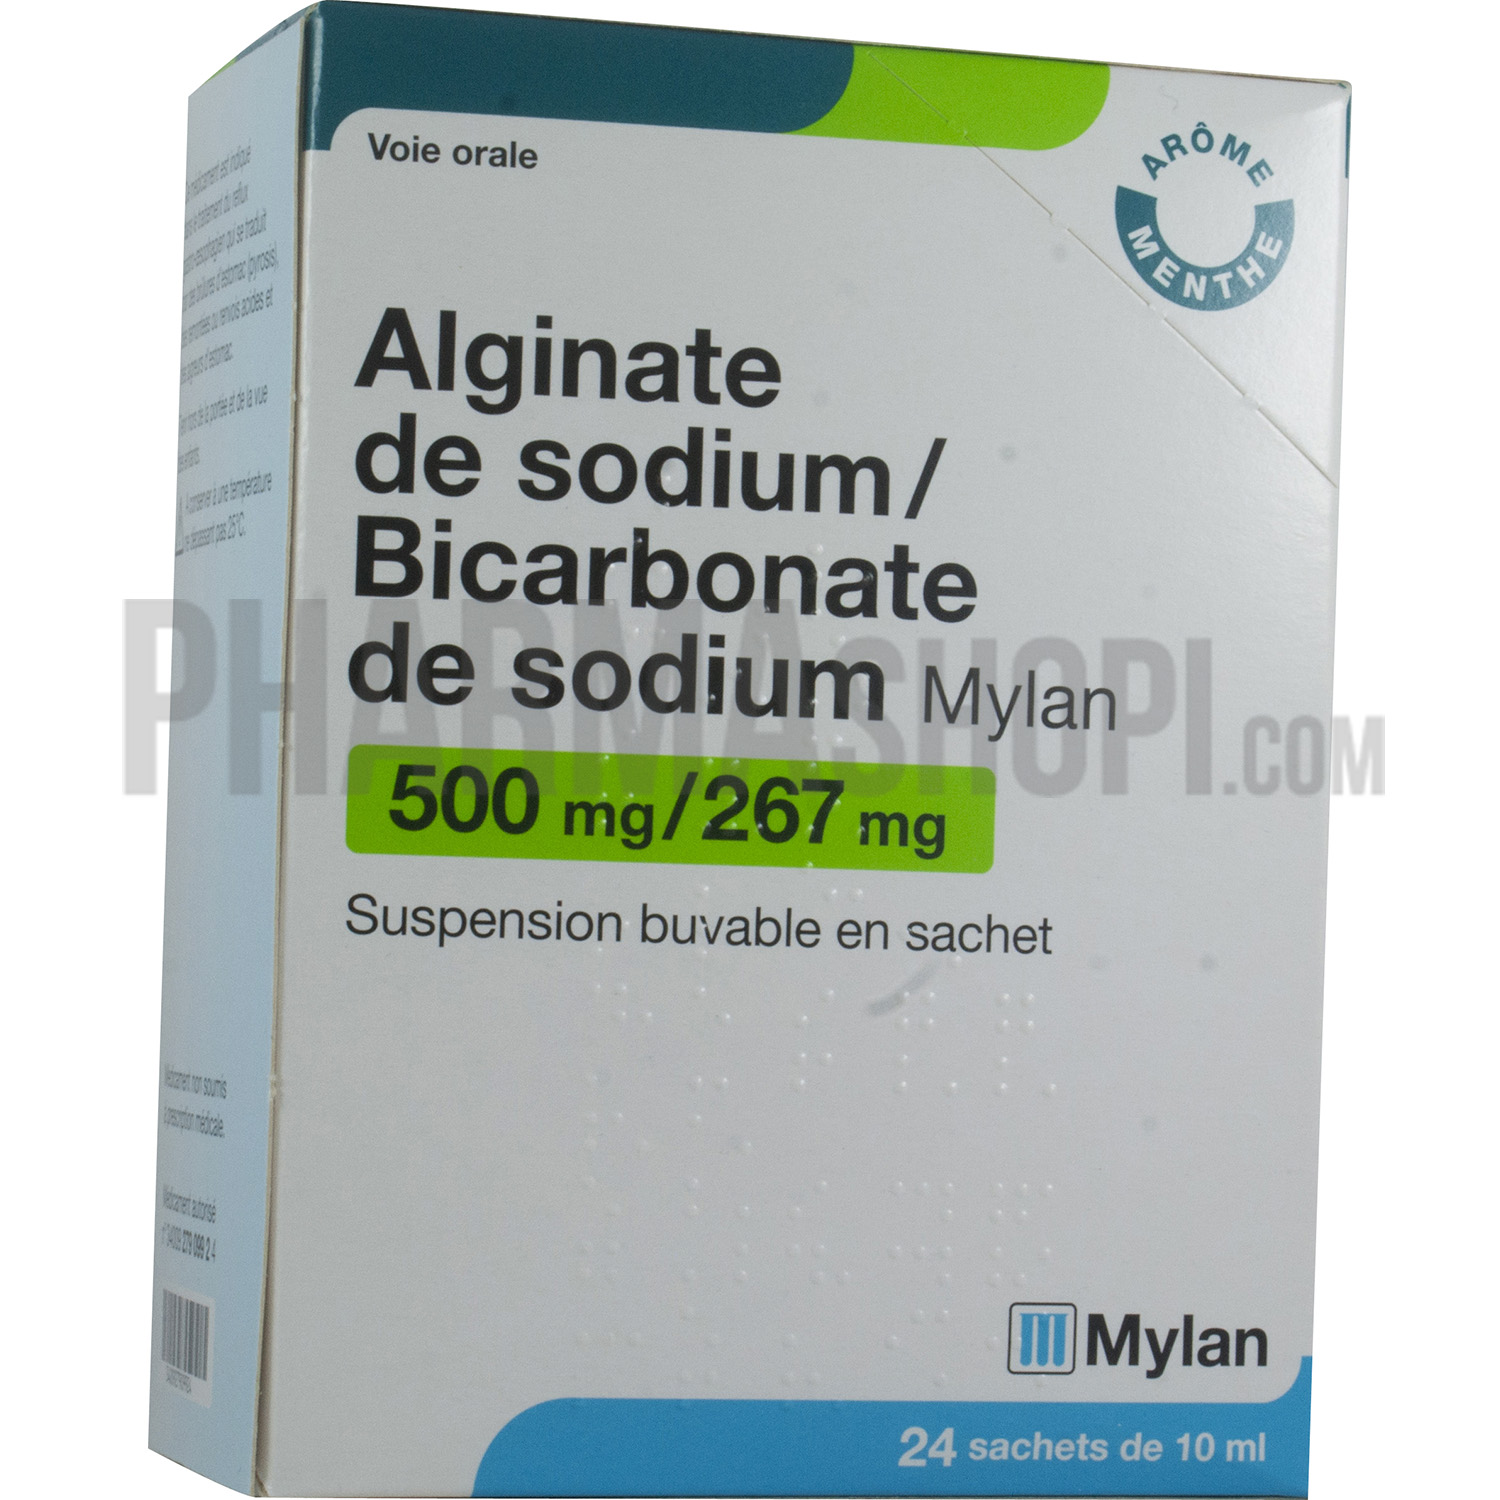 Alginate de sodium / Bicarbonate de sodium Mylan suspension buvable en sachet - boite de 24 sachets